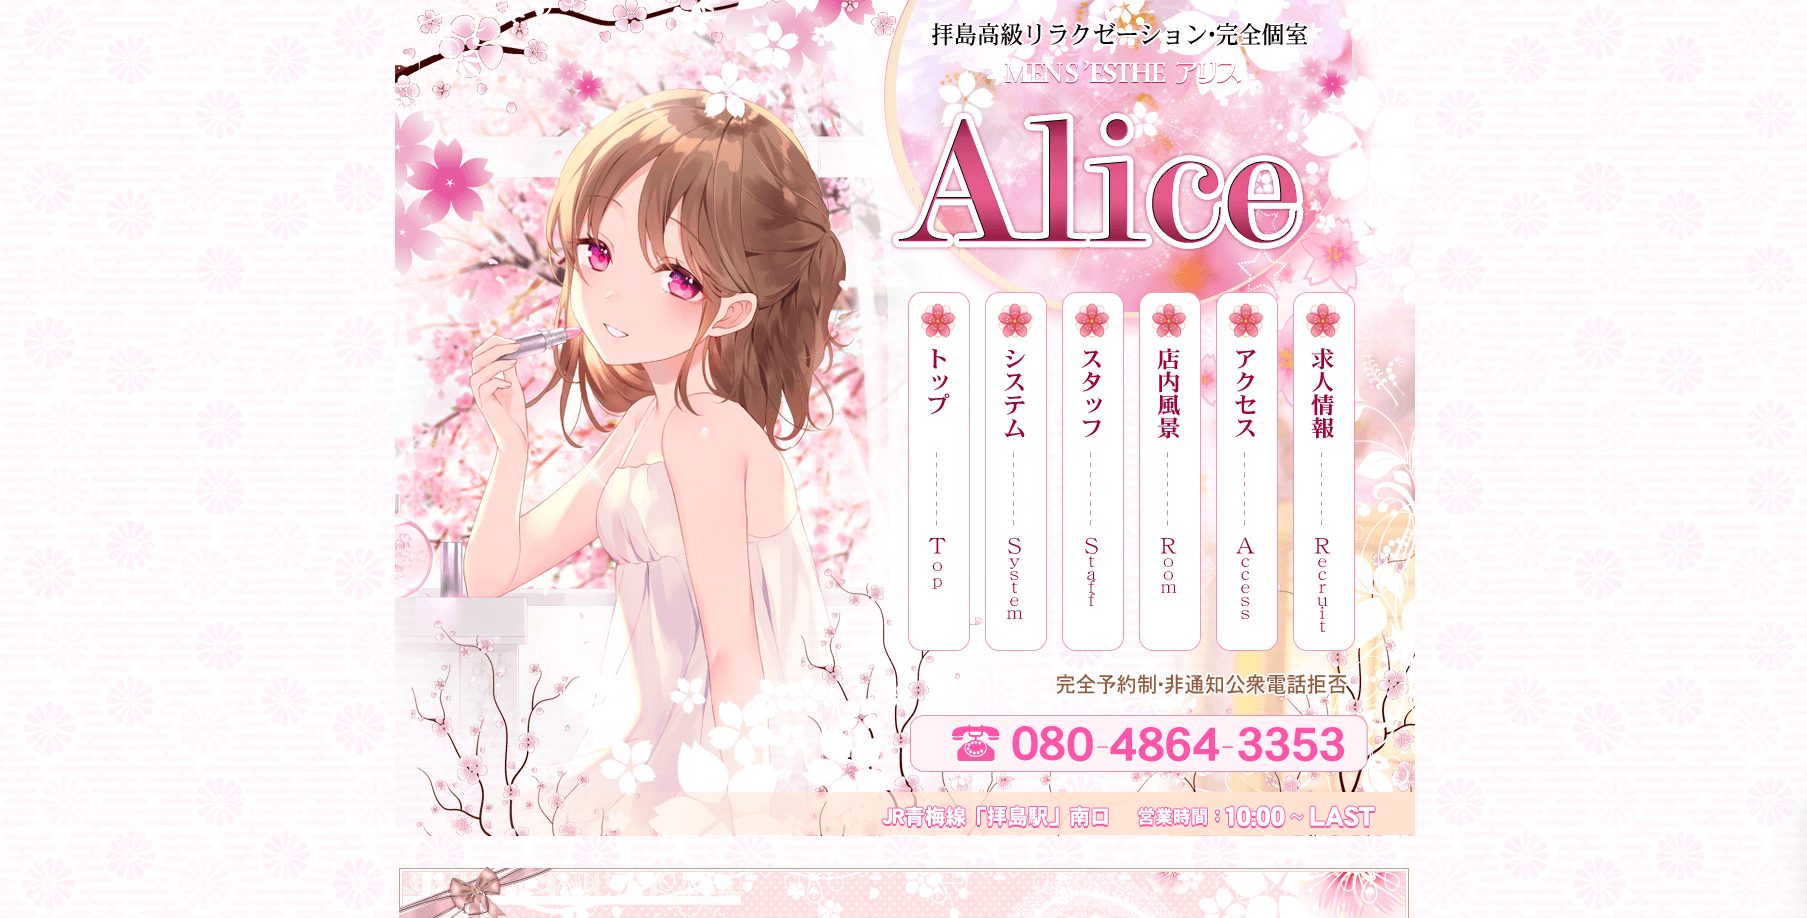 Alice(アリス)